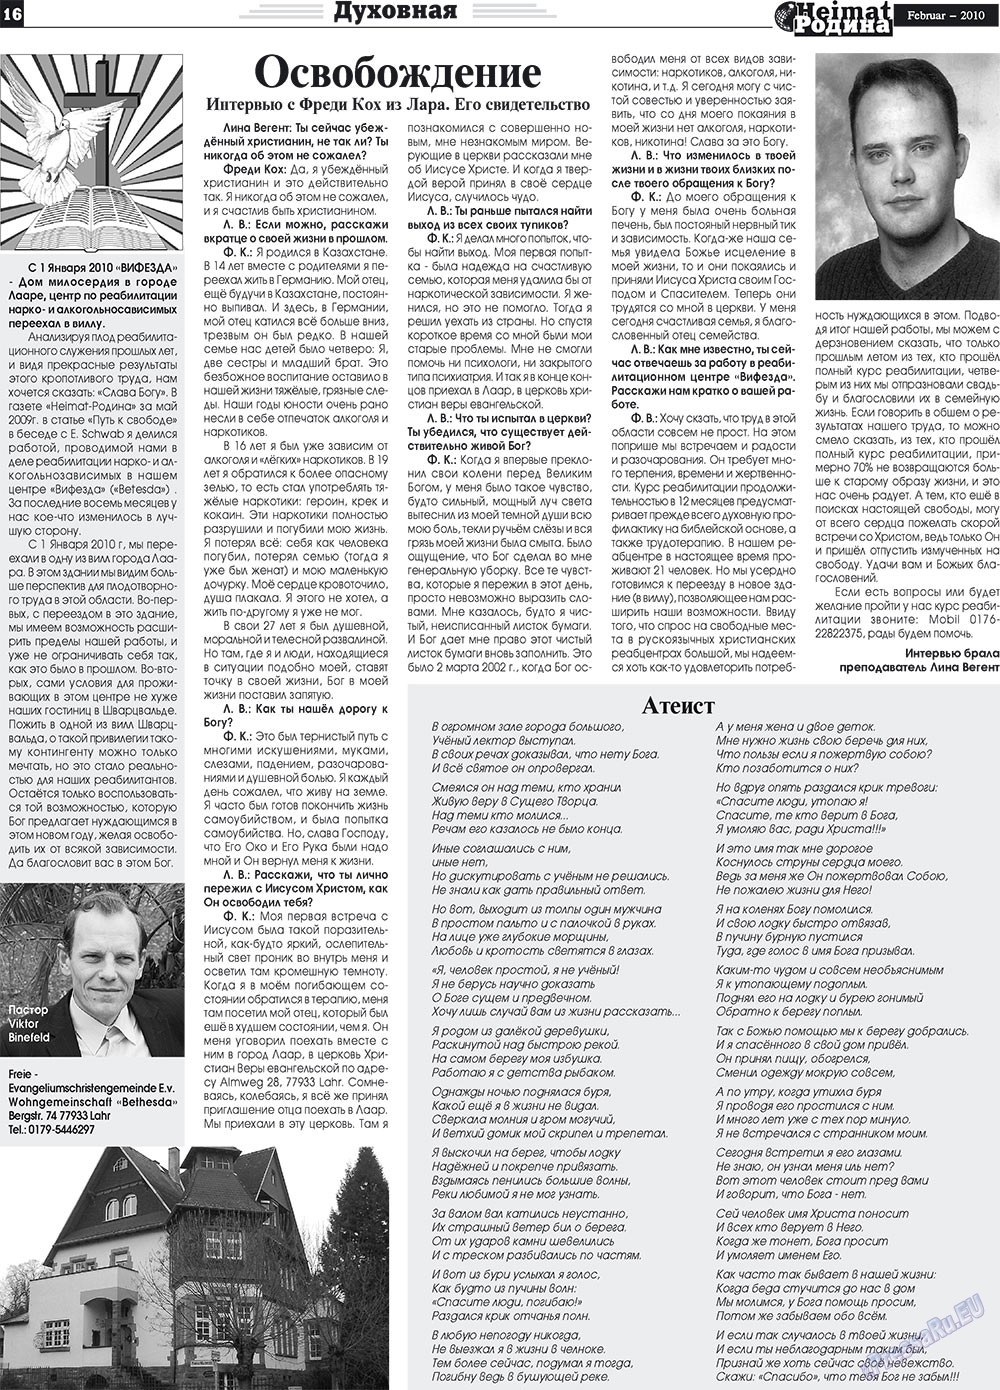 Heimat-Родина (газета). 2010 год, номер 2, стр. 16